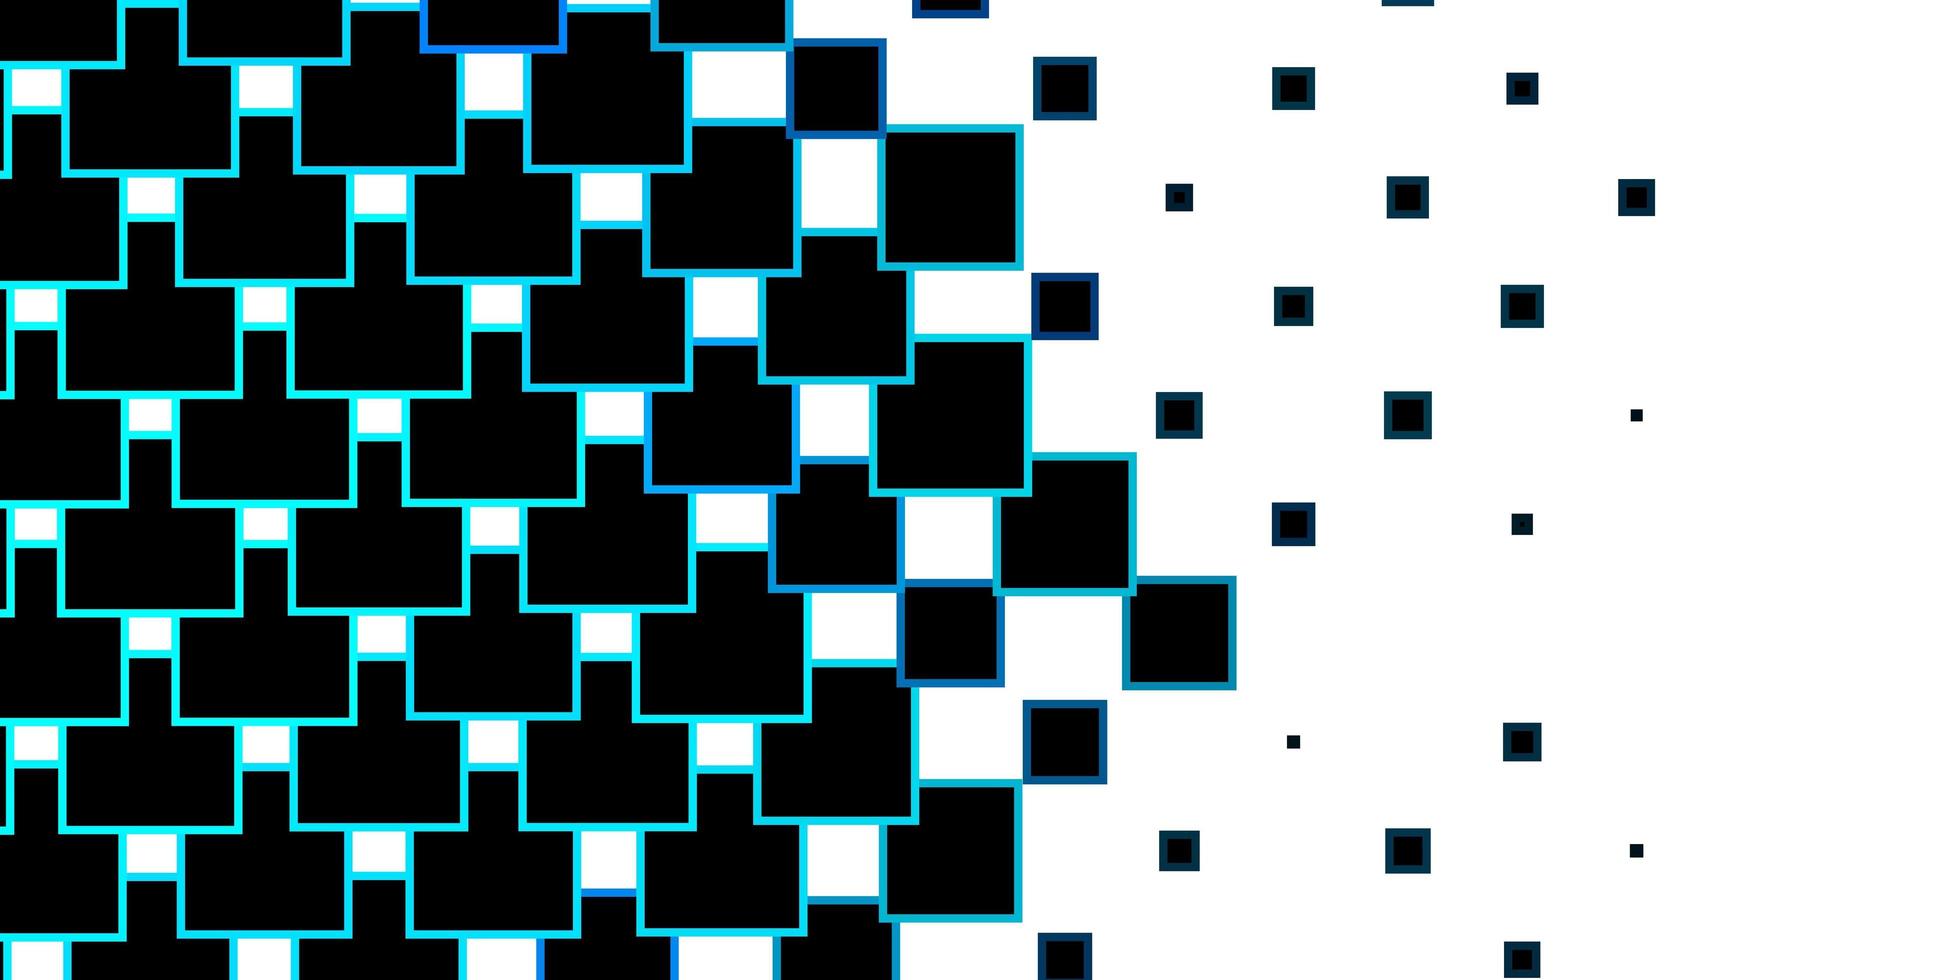 padrão de vetor azul escuro em ilustração colorida de estilo quadrado com retângulos gradientes e modelo de quadrados para celulares